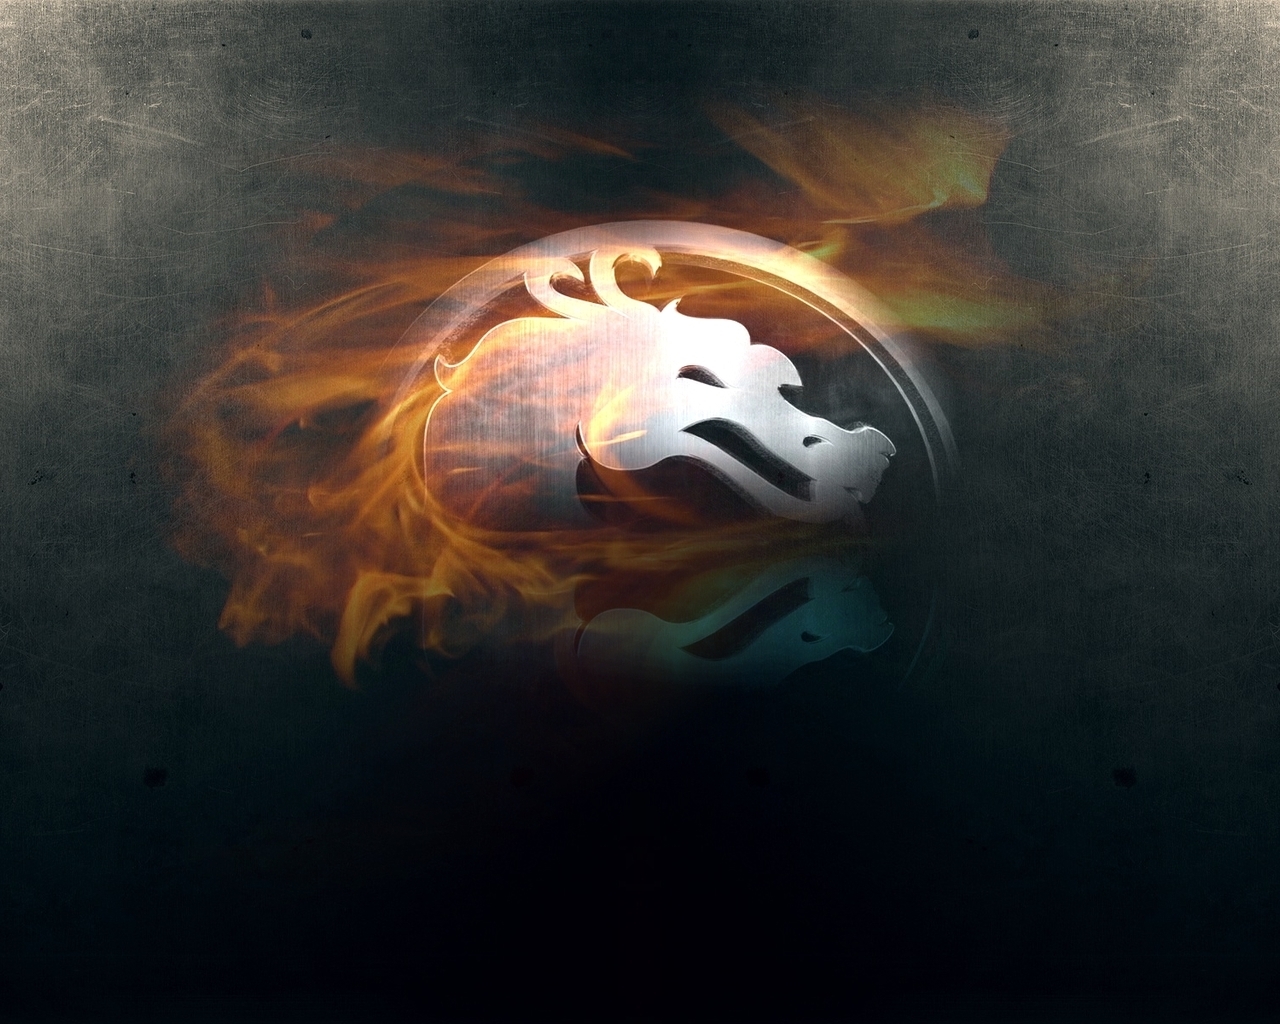  Mortal Kombat HQ Background Images